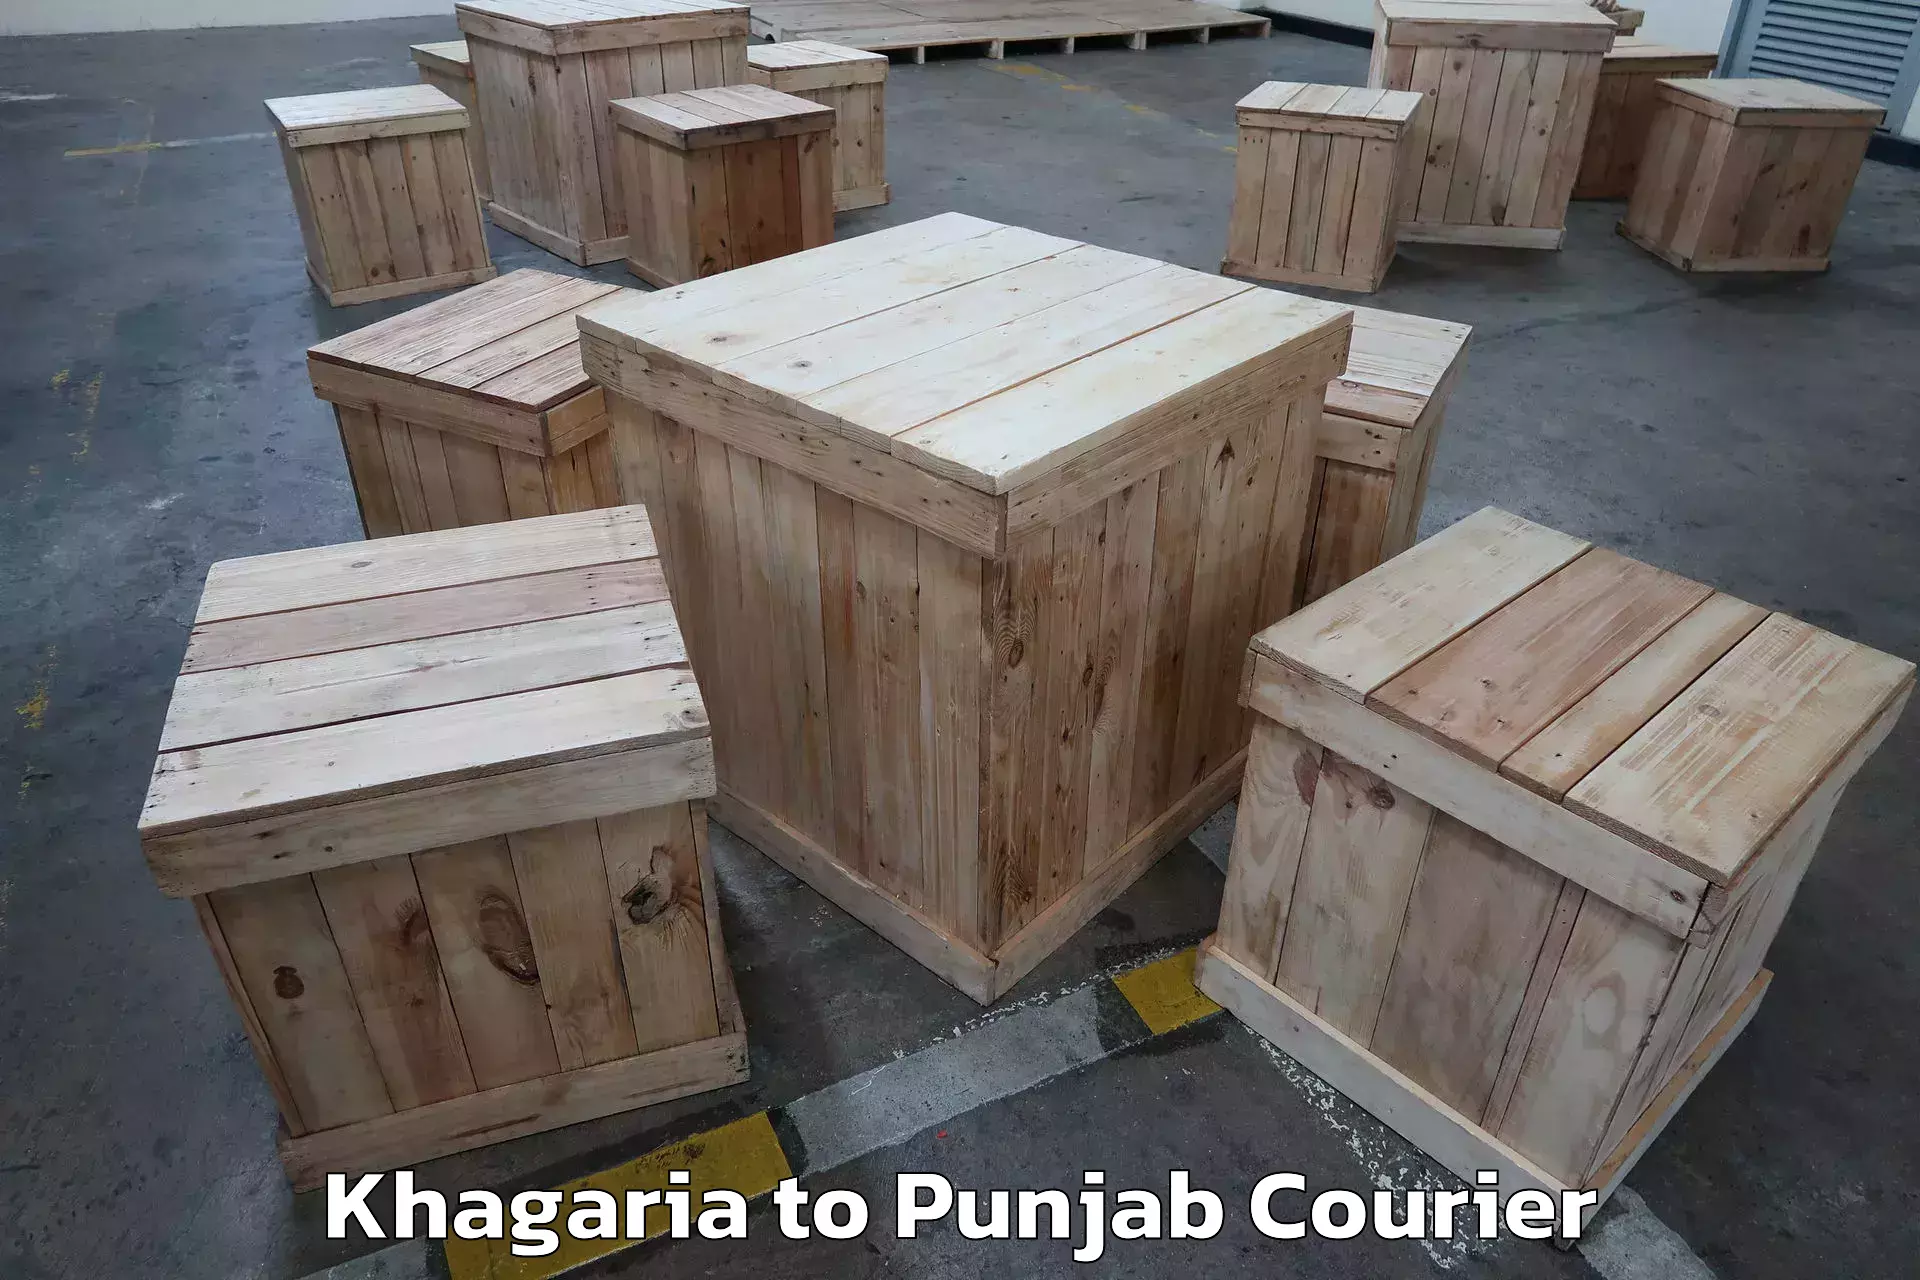 Quality moving company Khagaria to Punjab